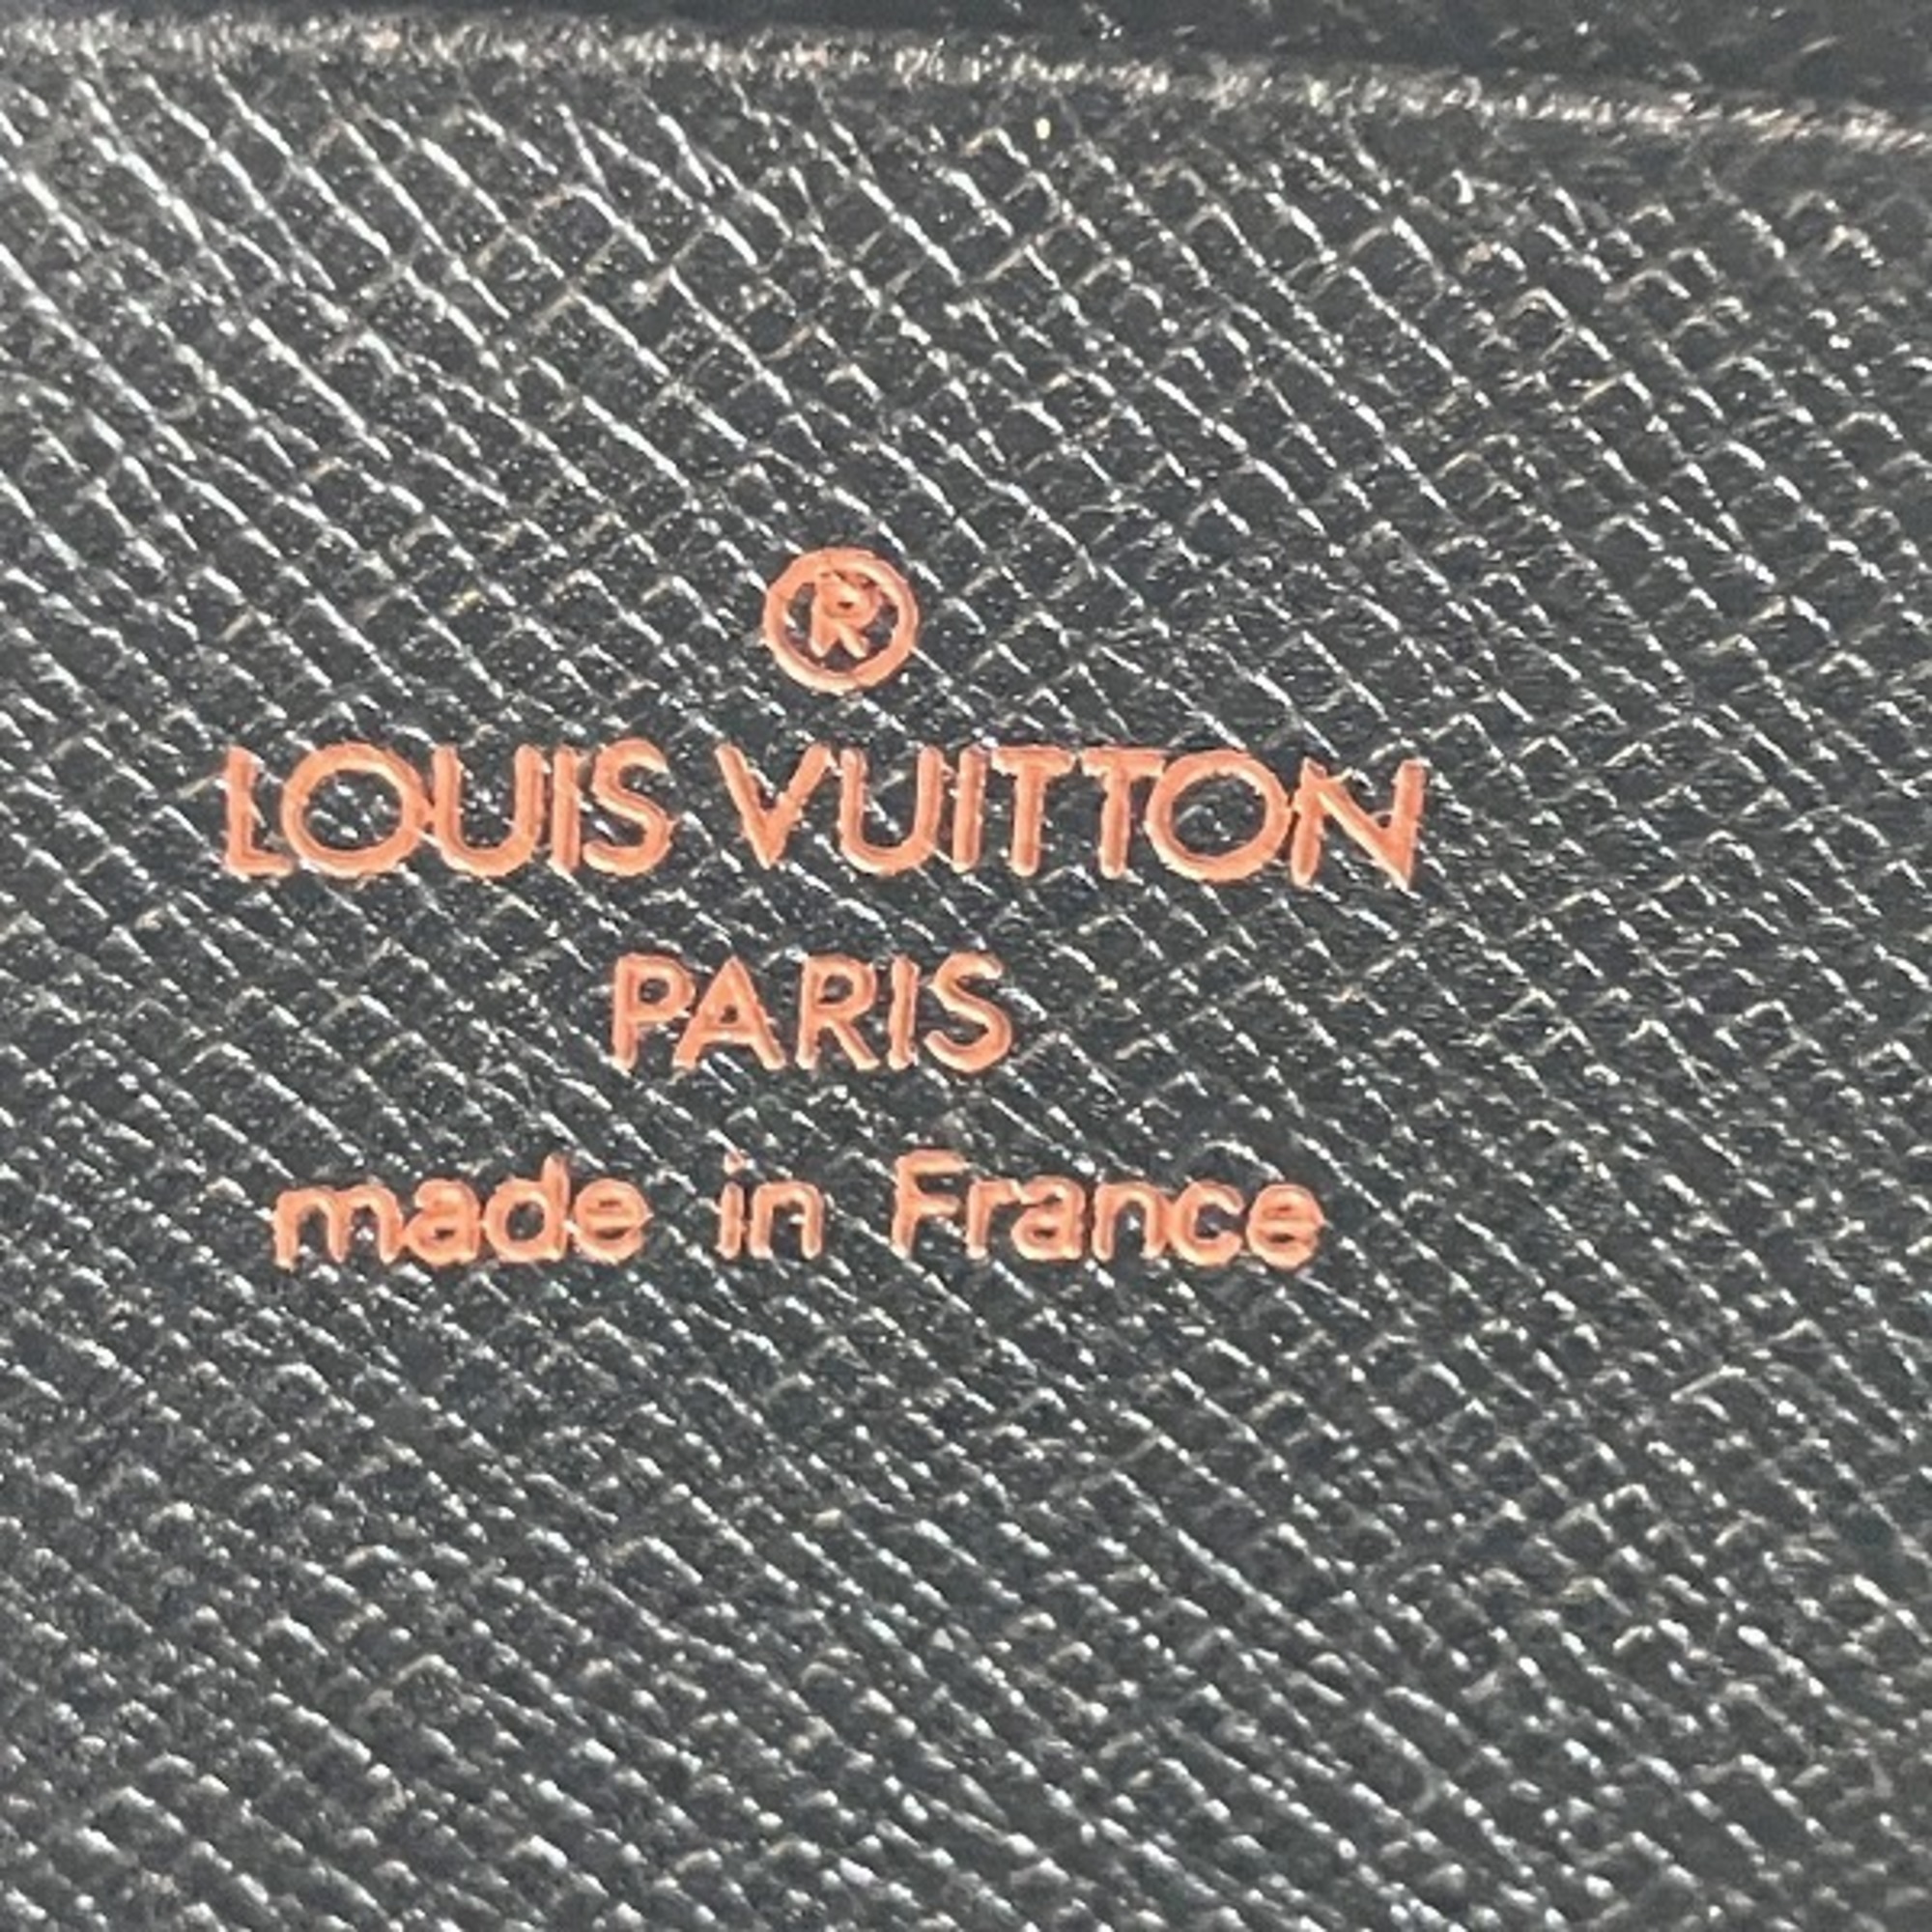 Louis Vuitton Epi Portefeuille Z M63442 Wallet Coin Case Men's Women's